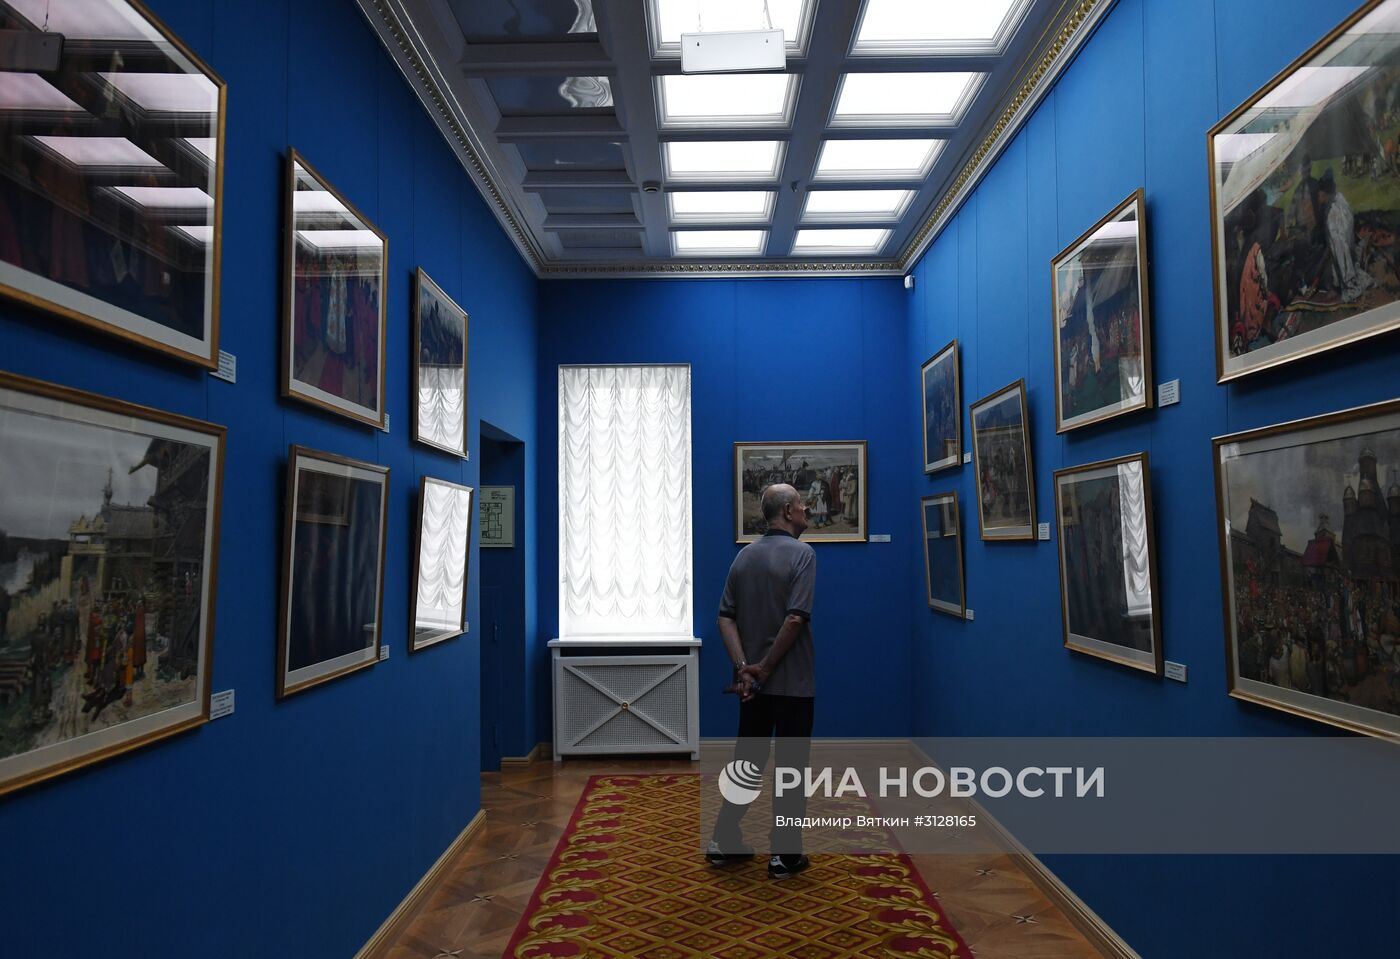 Открытие "Музея сословий России"